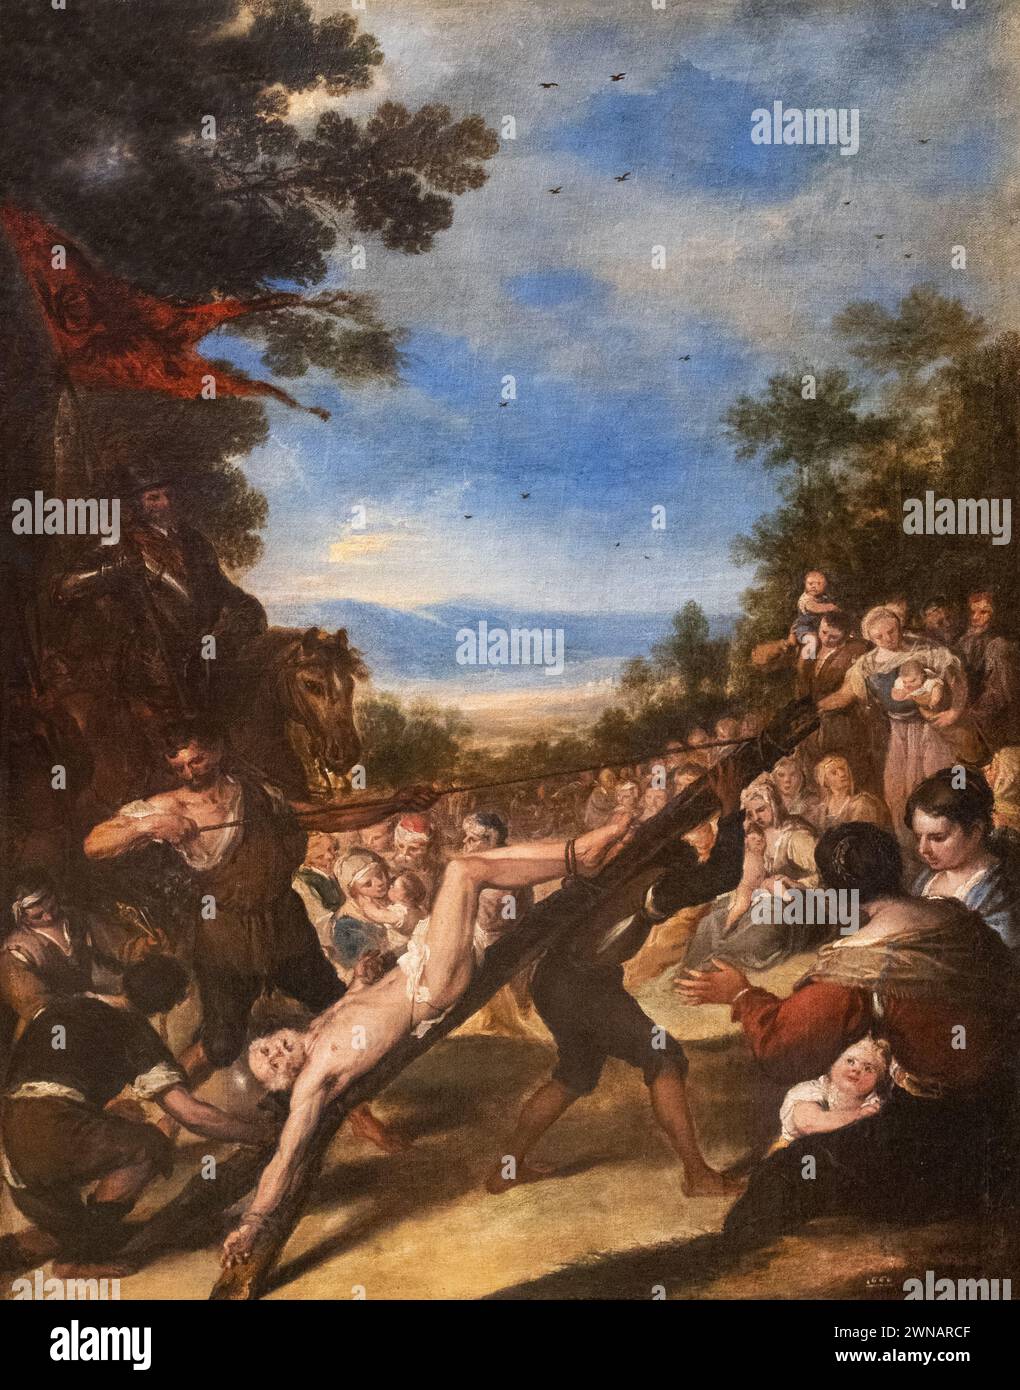 Jose Antolinez peinture, 'la crucifixion de Saint Pierre', 1660. Peintre espagnol du XVIIe siècle, période baroque, 1635-1675 Banque D'Images